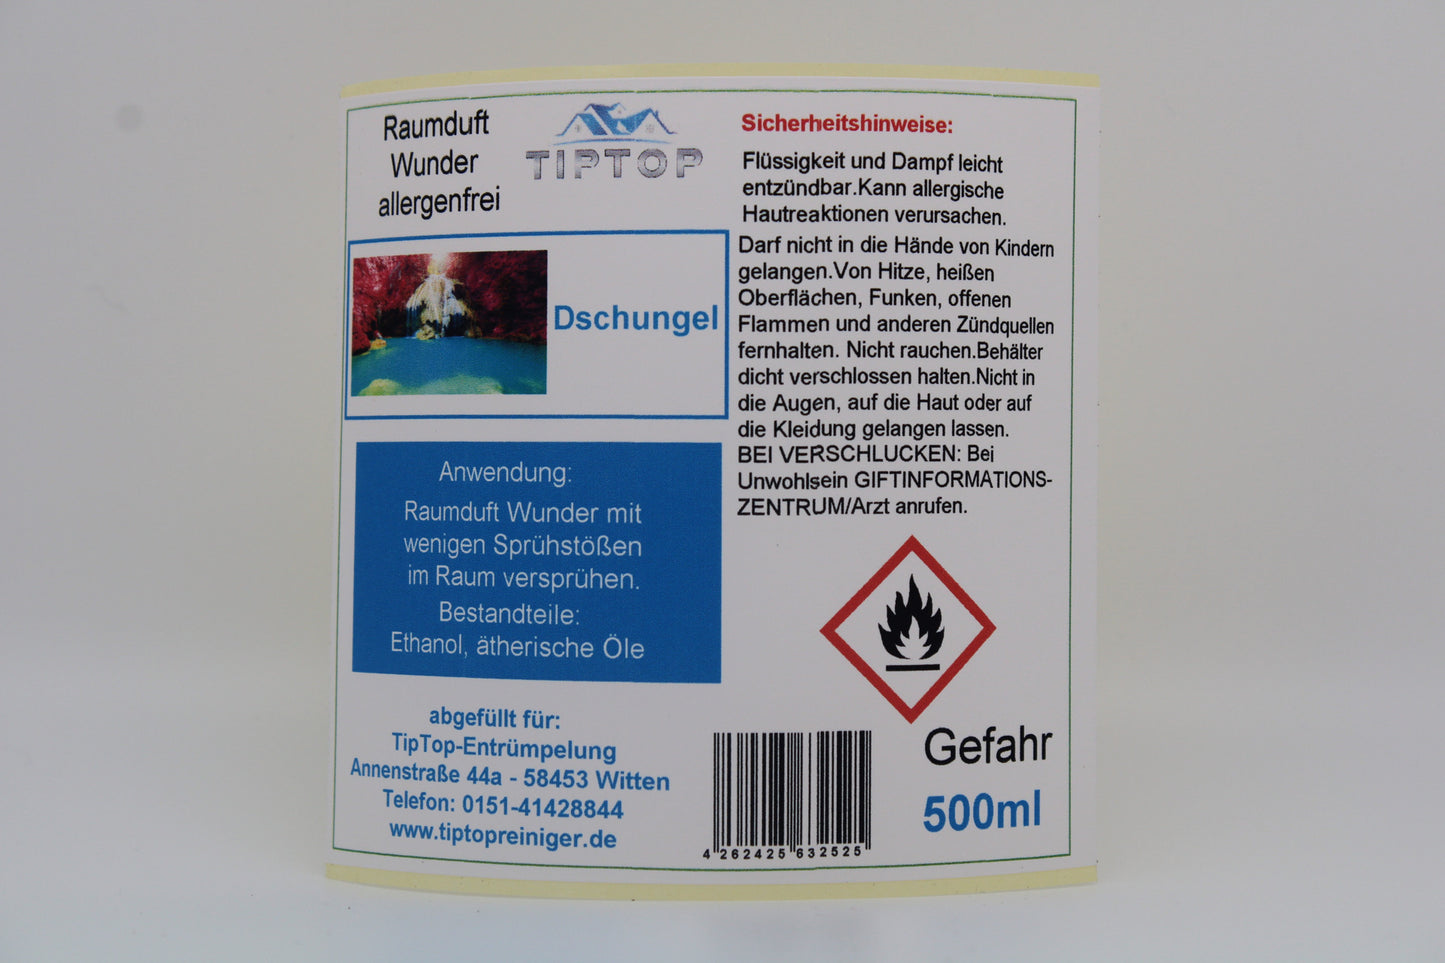 Raumduft-Wunder Allergenfrei - 500ml - mehrere Duftnoten zur Auswahl